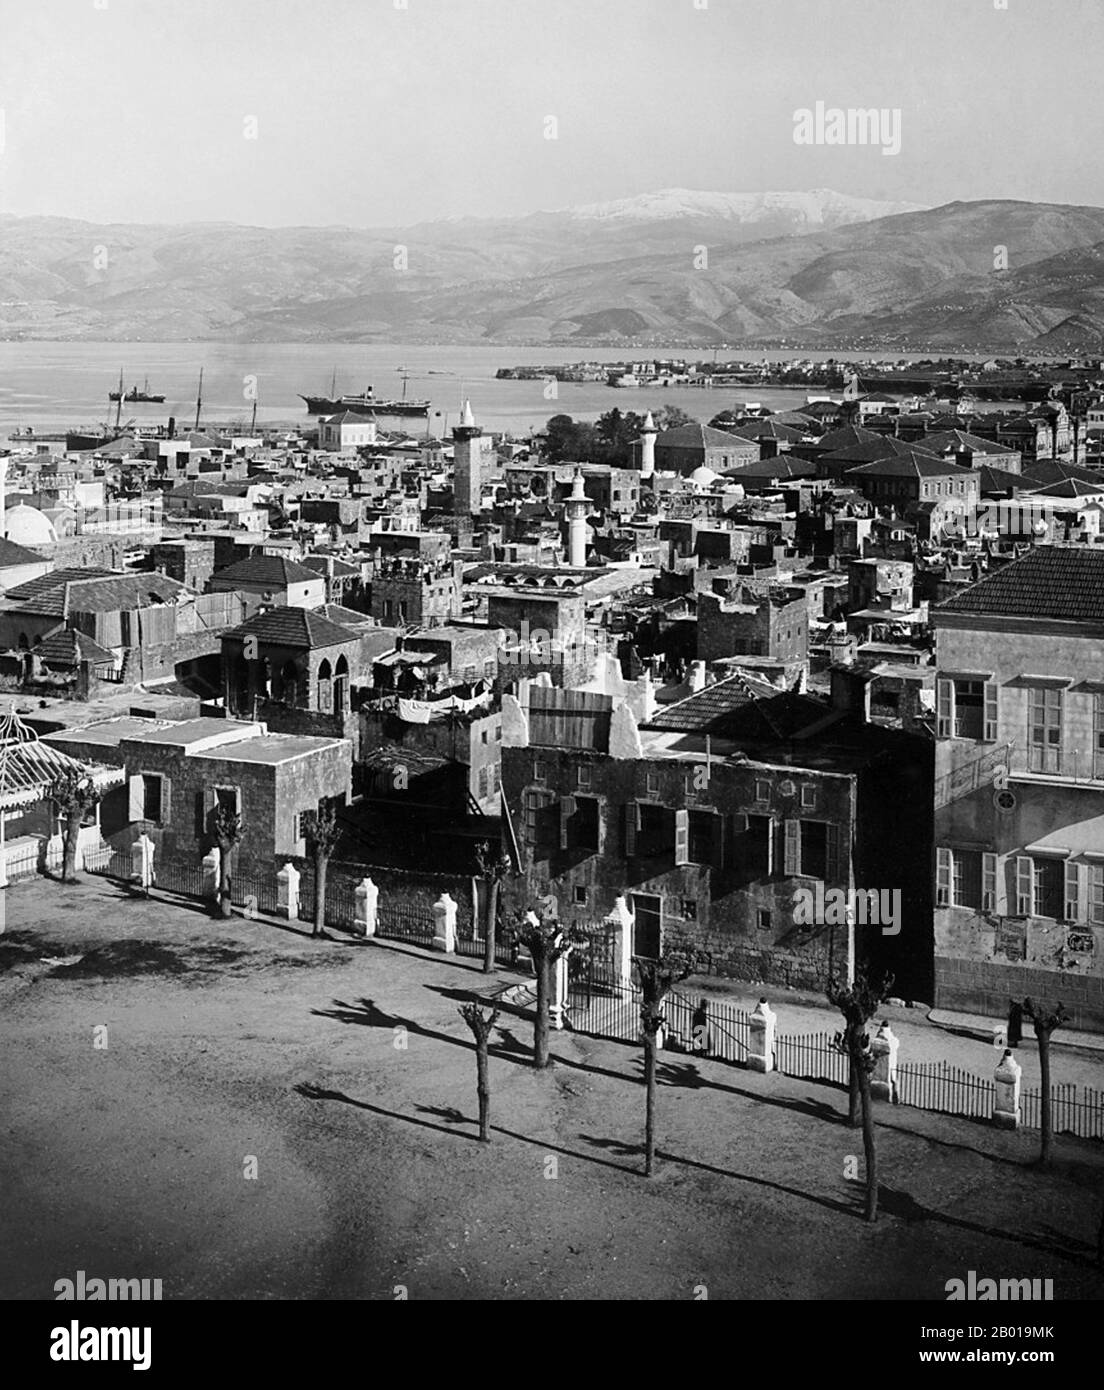 Liban : vue sur Beyrouth jusqu'à la baie de St George, c. 1898-1914. Beyrouth (arabe: Bayrūt) est la capitale et la plus grande ville du Liban avec une population allant de 1 millions à plus de 2 millions en 2007. Situé sur une péninsule au milieu de la côte libanaise avec la Méditerranée, il sert de plus grand et principal port maritime du pays, et forme également la zone métropolitaine de Beyrouth, qui se compose de la ville et de ses banlieues. La première mention de cette métropole se trouve dans les anciennes lettres égyptiennes de Tell el Amarna, datant du 15th siècle BCE. Banque D'Images